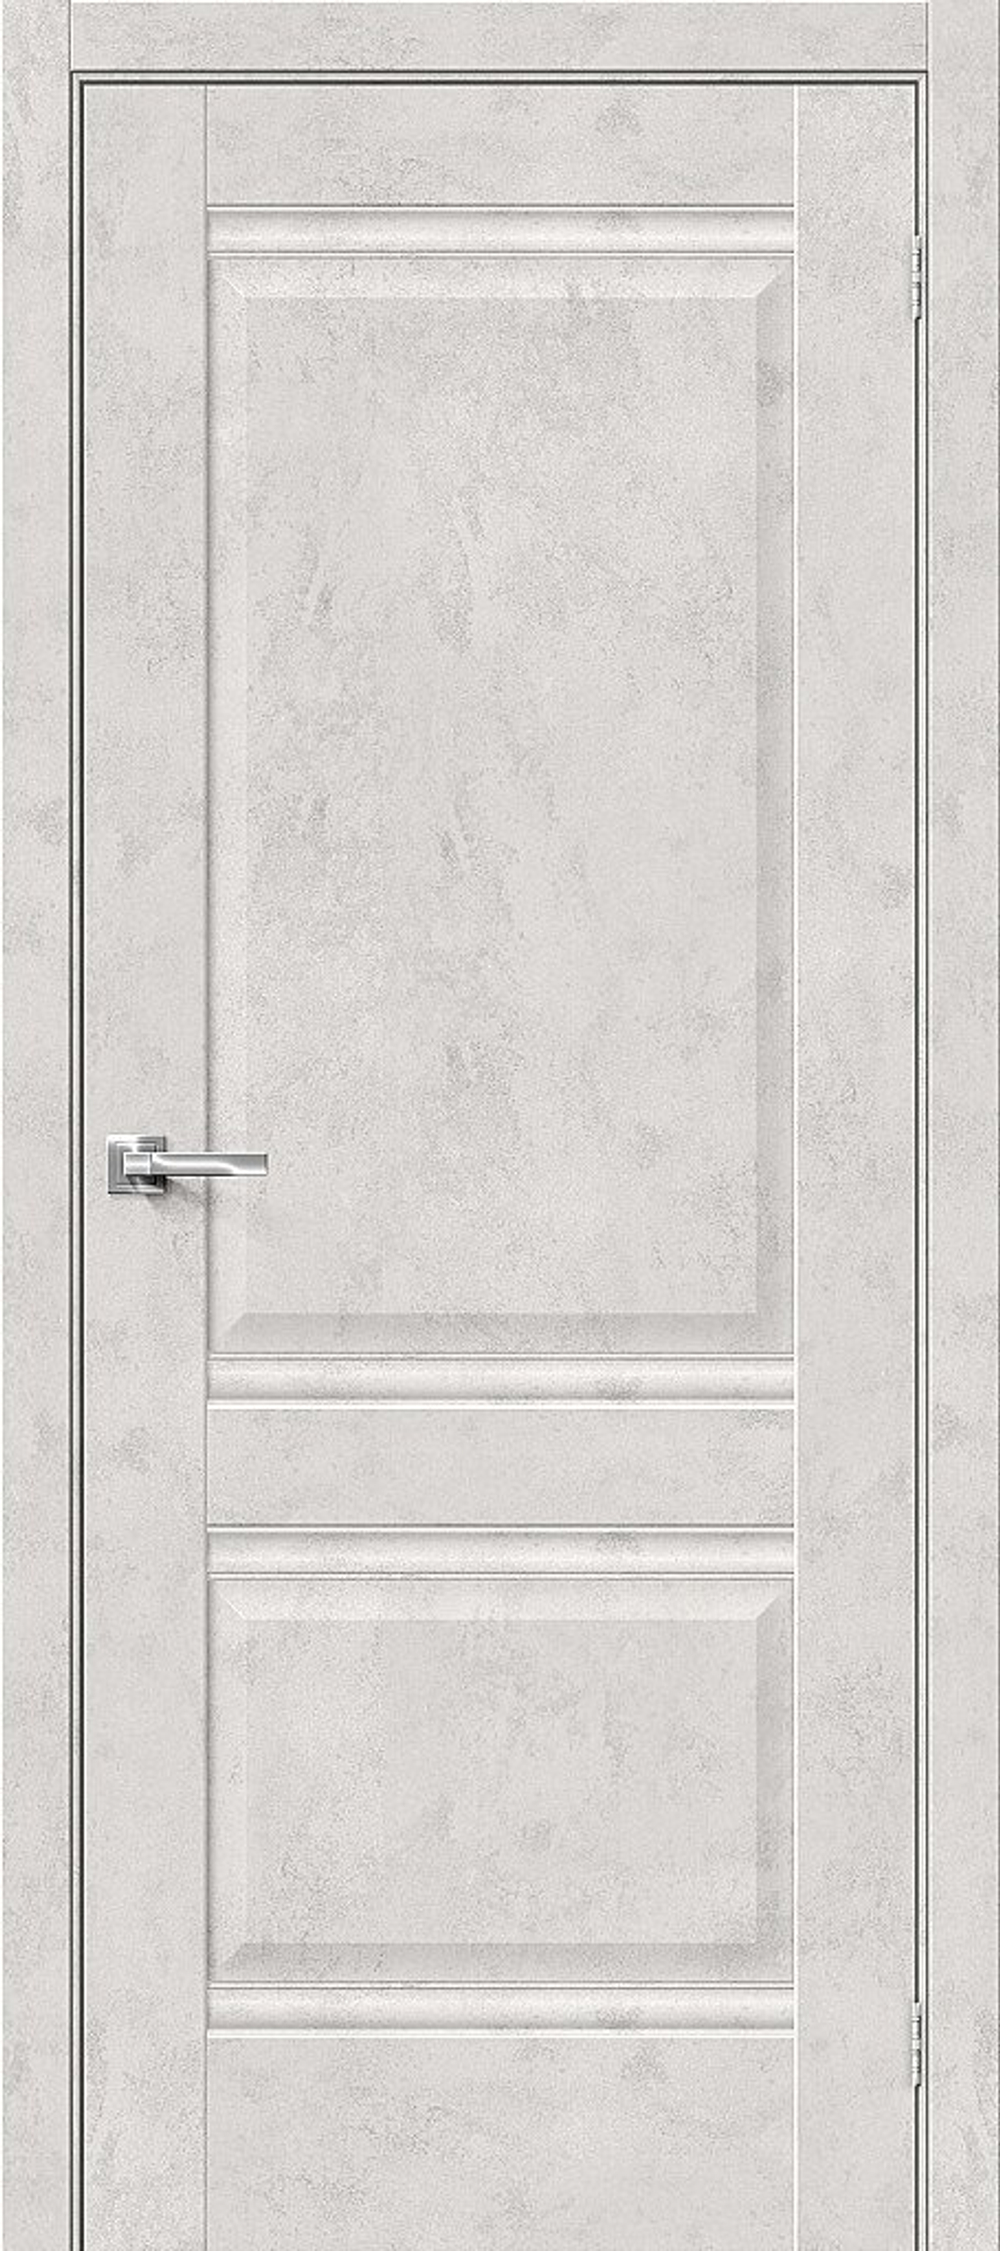 Дверь Эко Шпон Прима-2